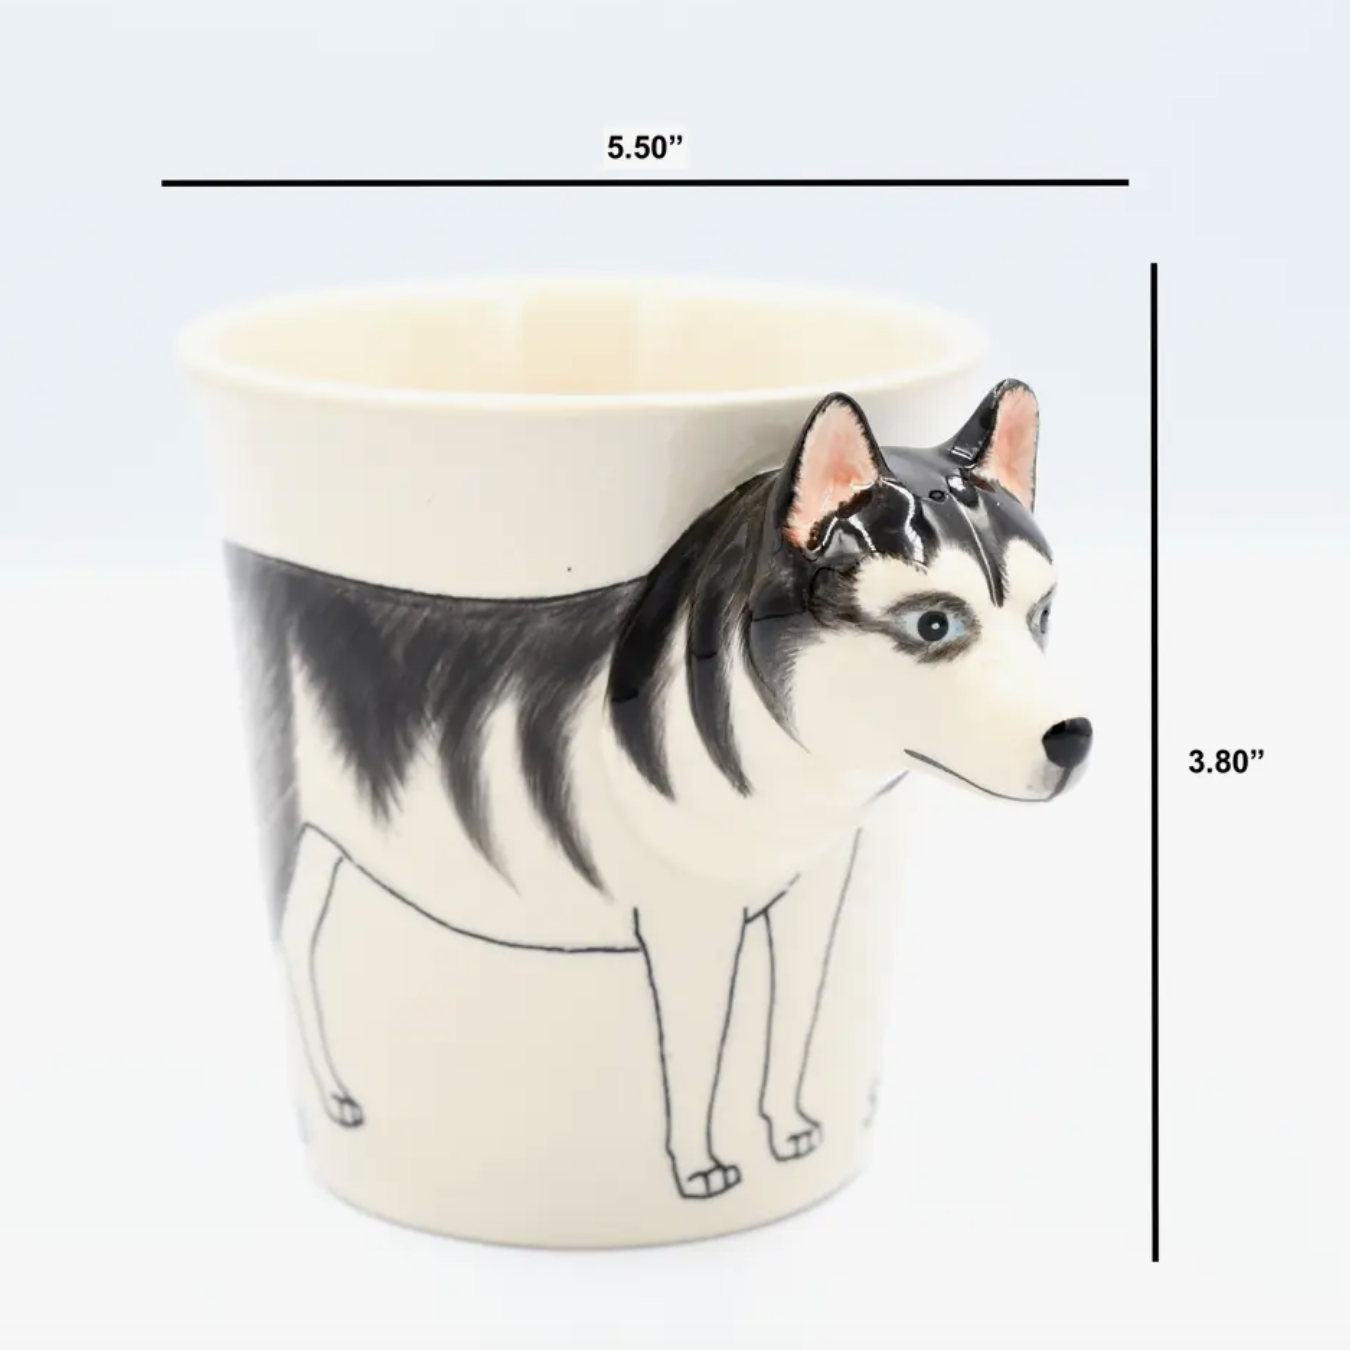 Siberian 10oz Ceramic Mug